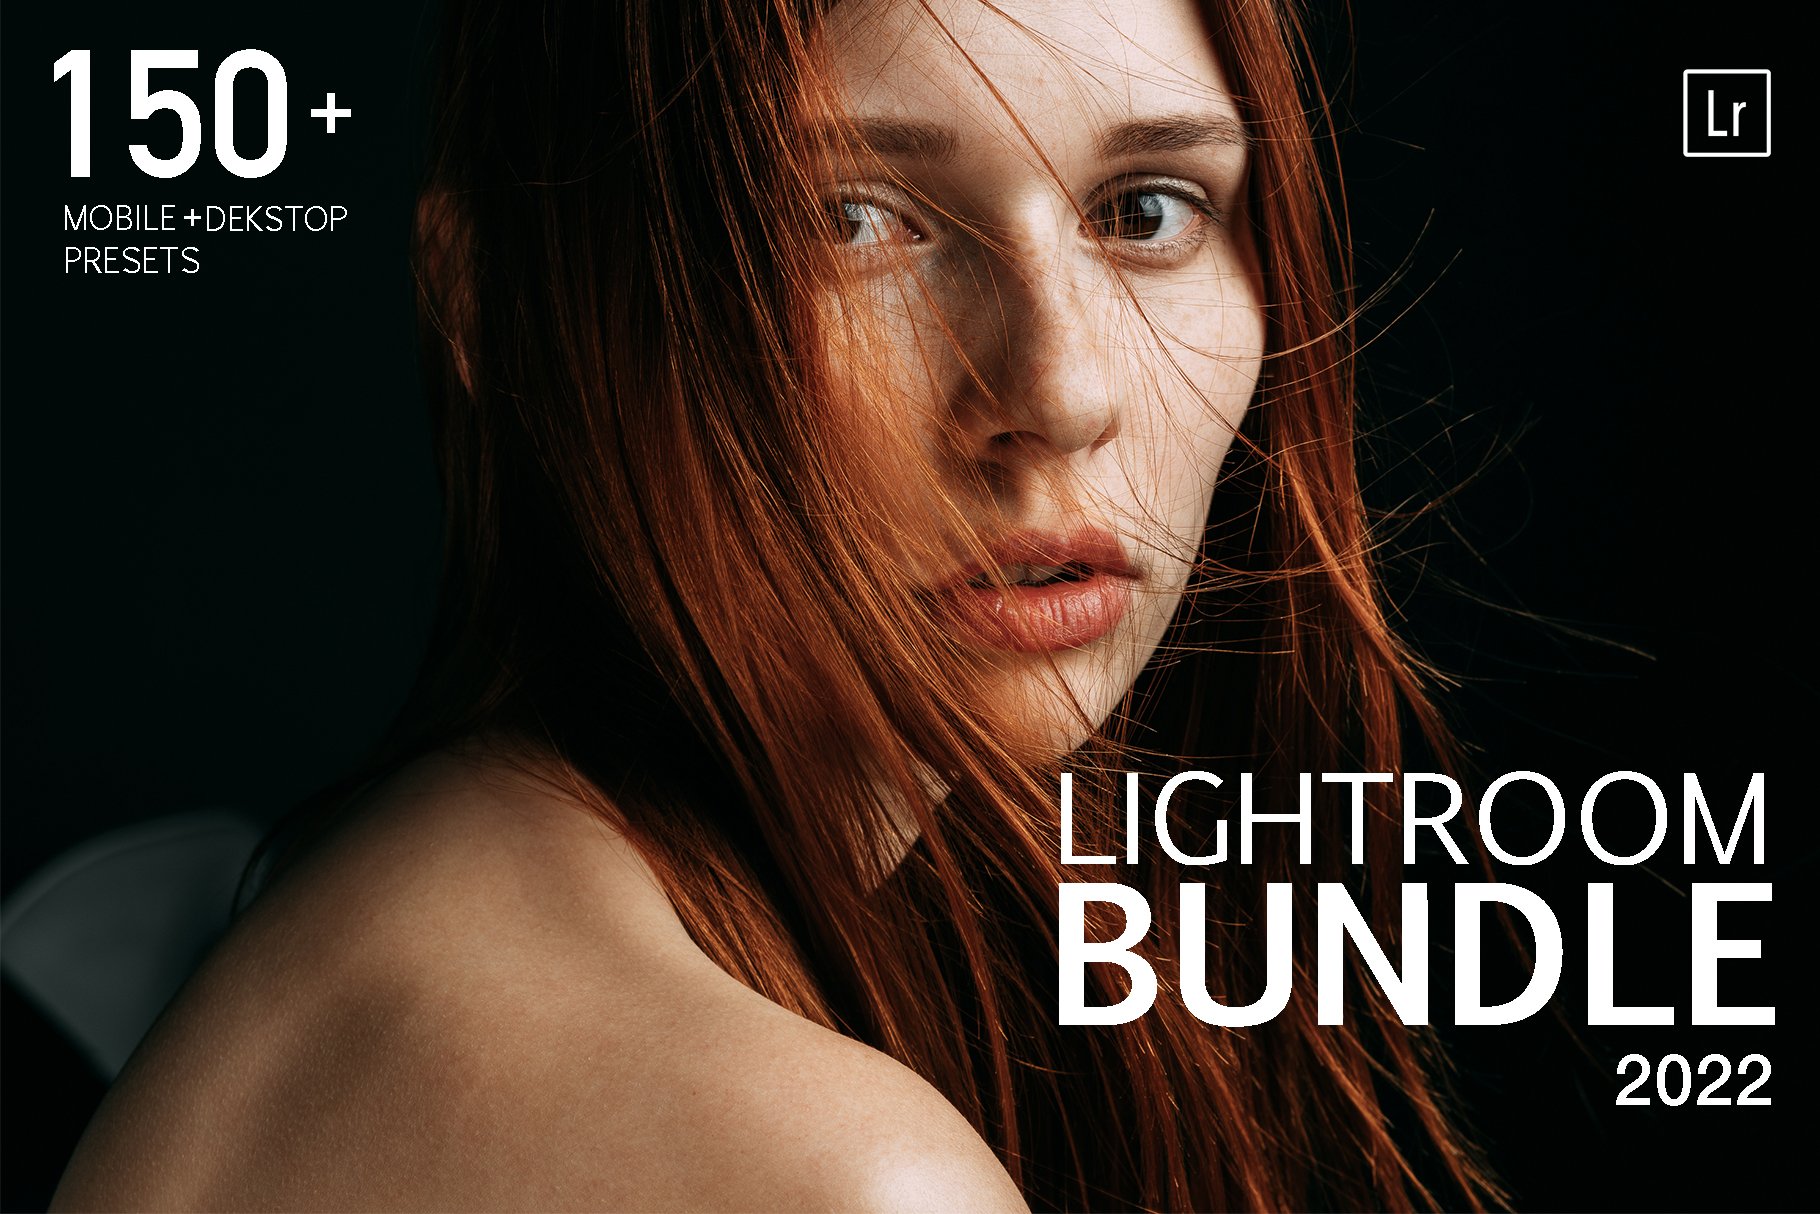 150+ Lightroom presets Bundle SALEcover image.